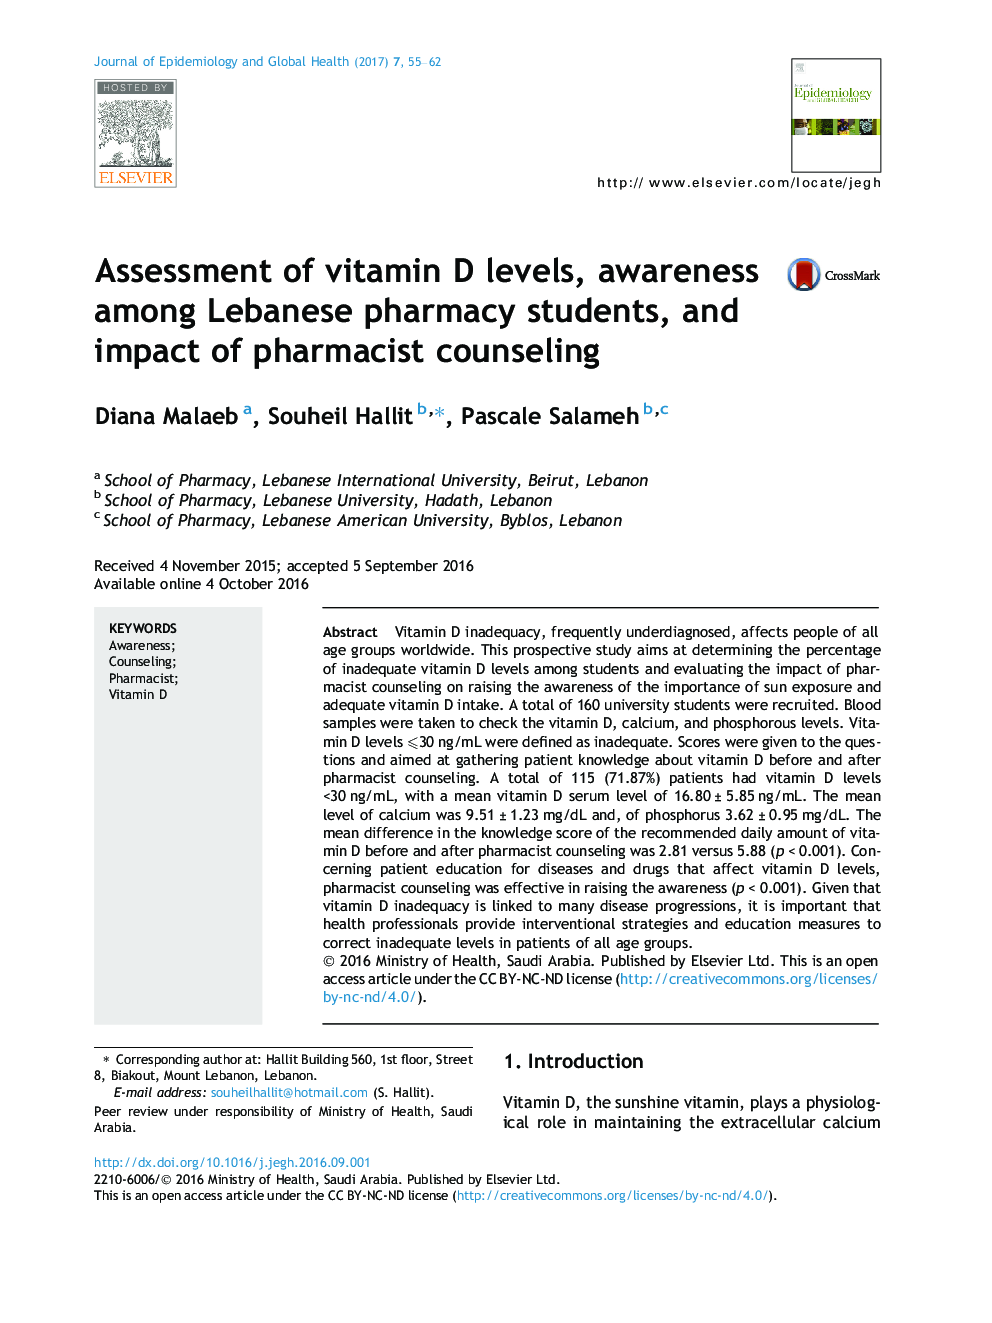 ارزیابی سطح ویتامین D، آگاهی دانشجویان داروخانه لبنانی و تاثیر مشاوره داروساز